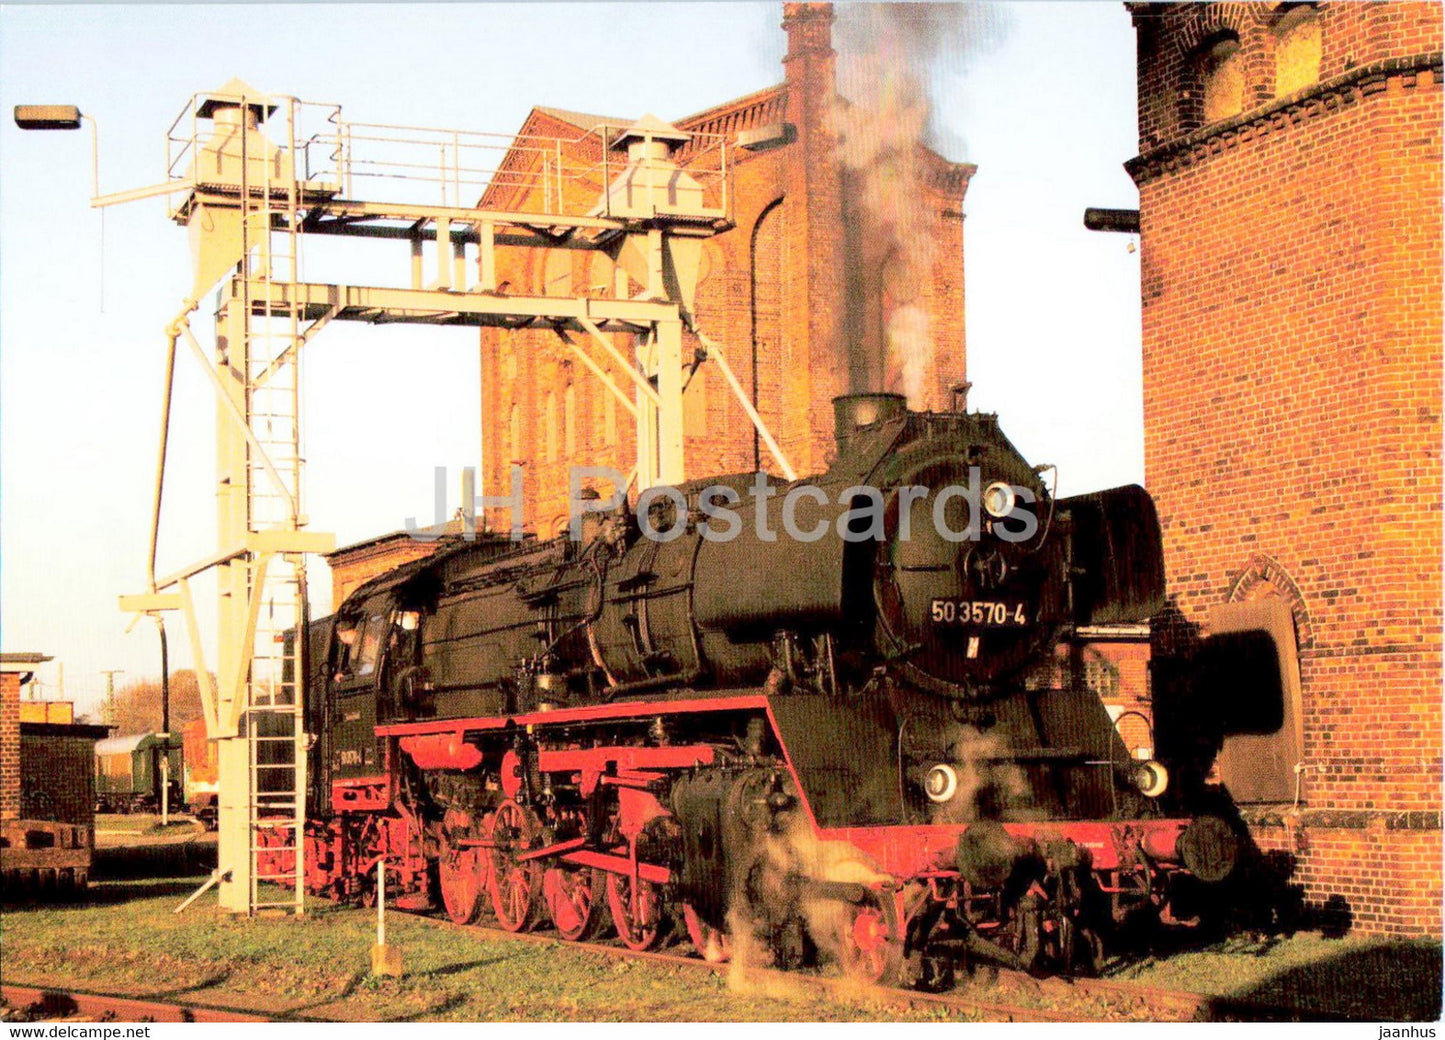 Historischer Lokschuppen Wittenberge - train - railway - locomotive - Germany - unused - JH Postcards